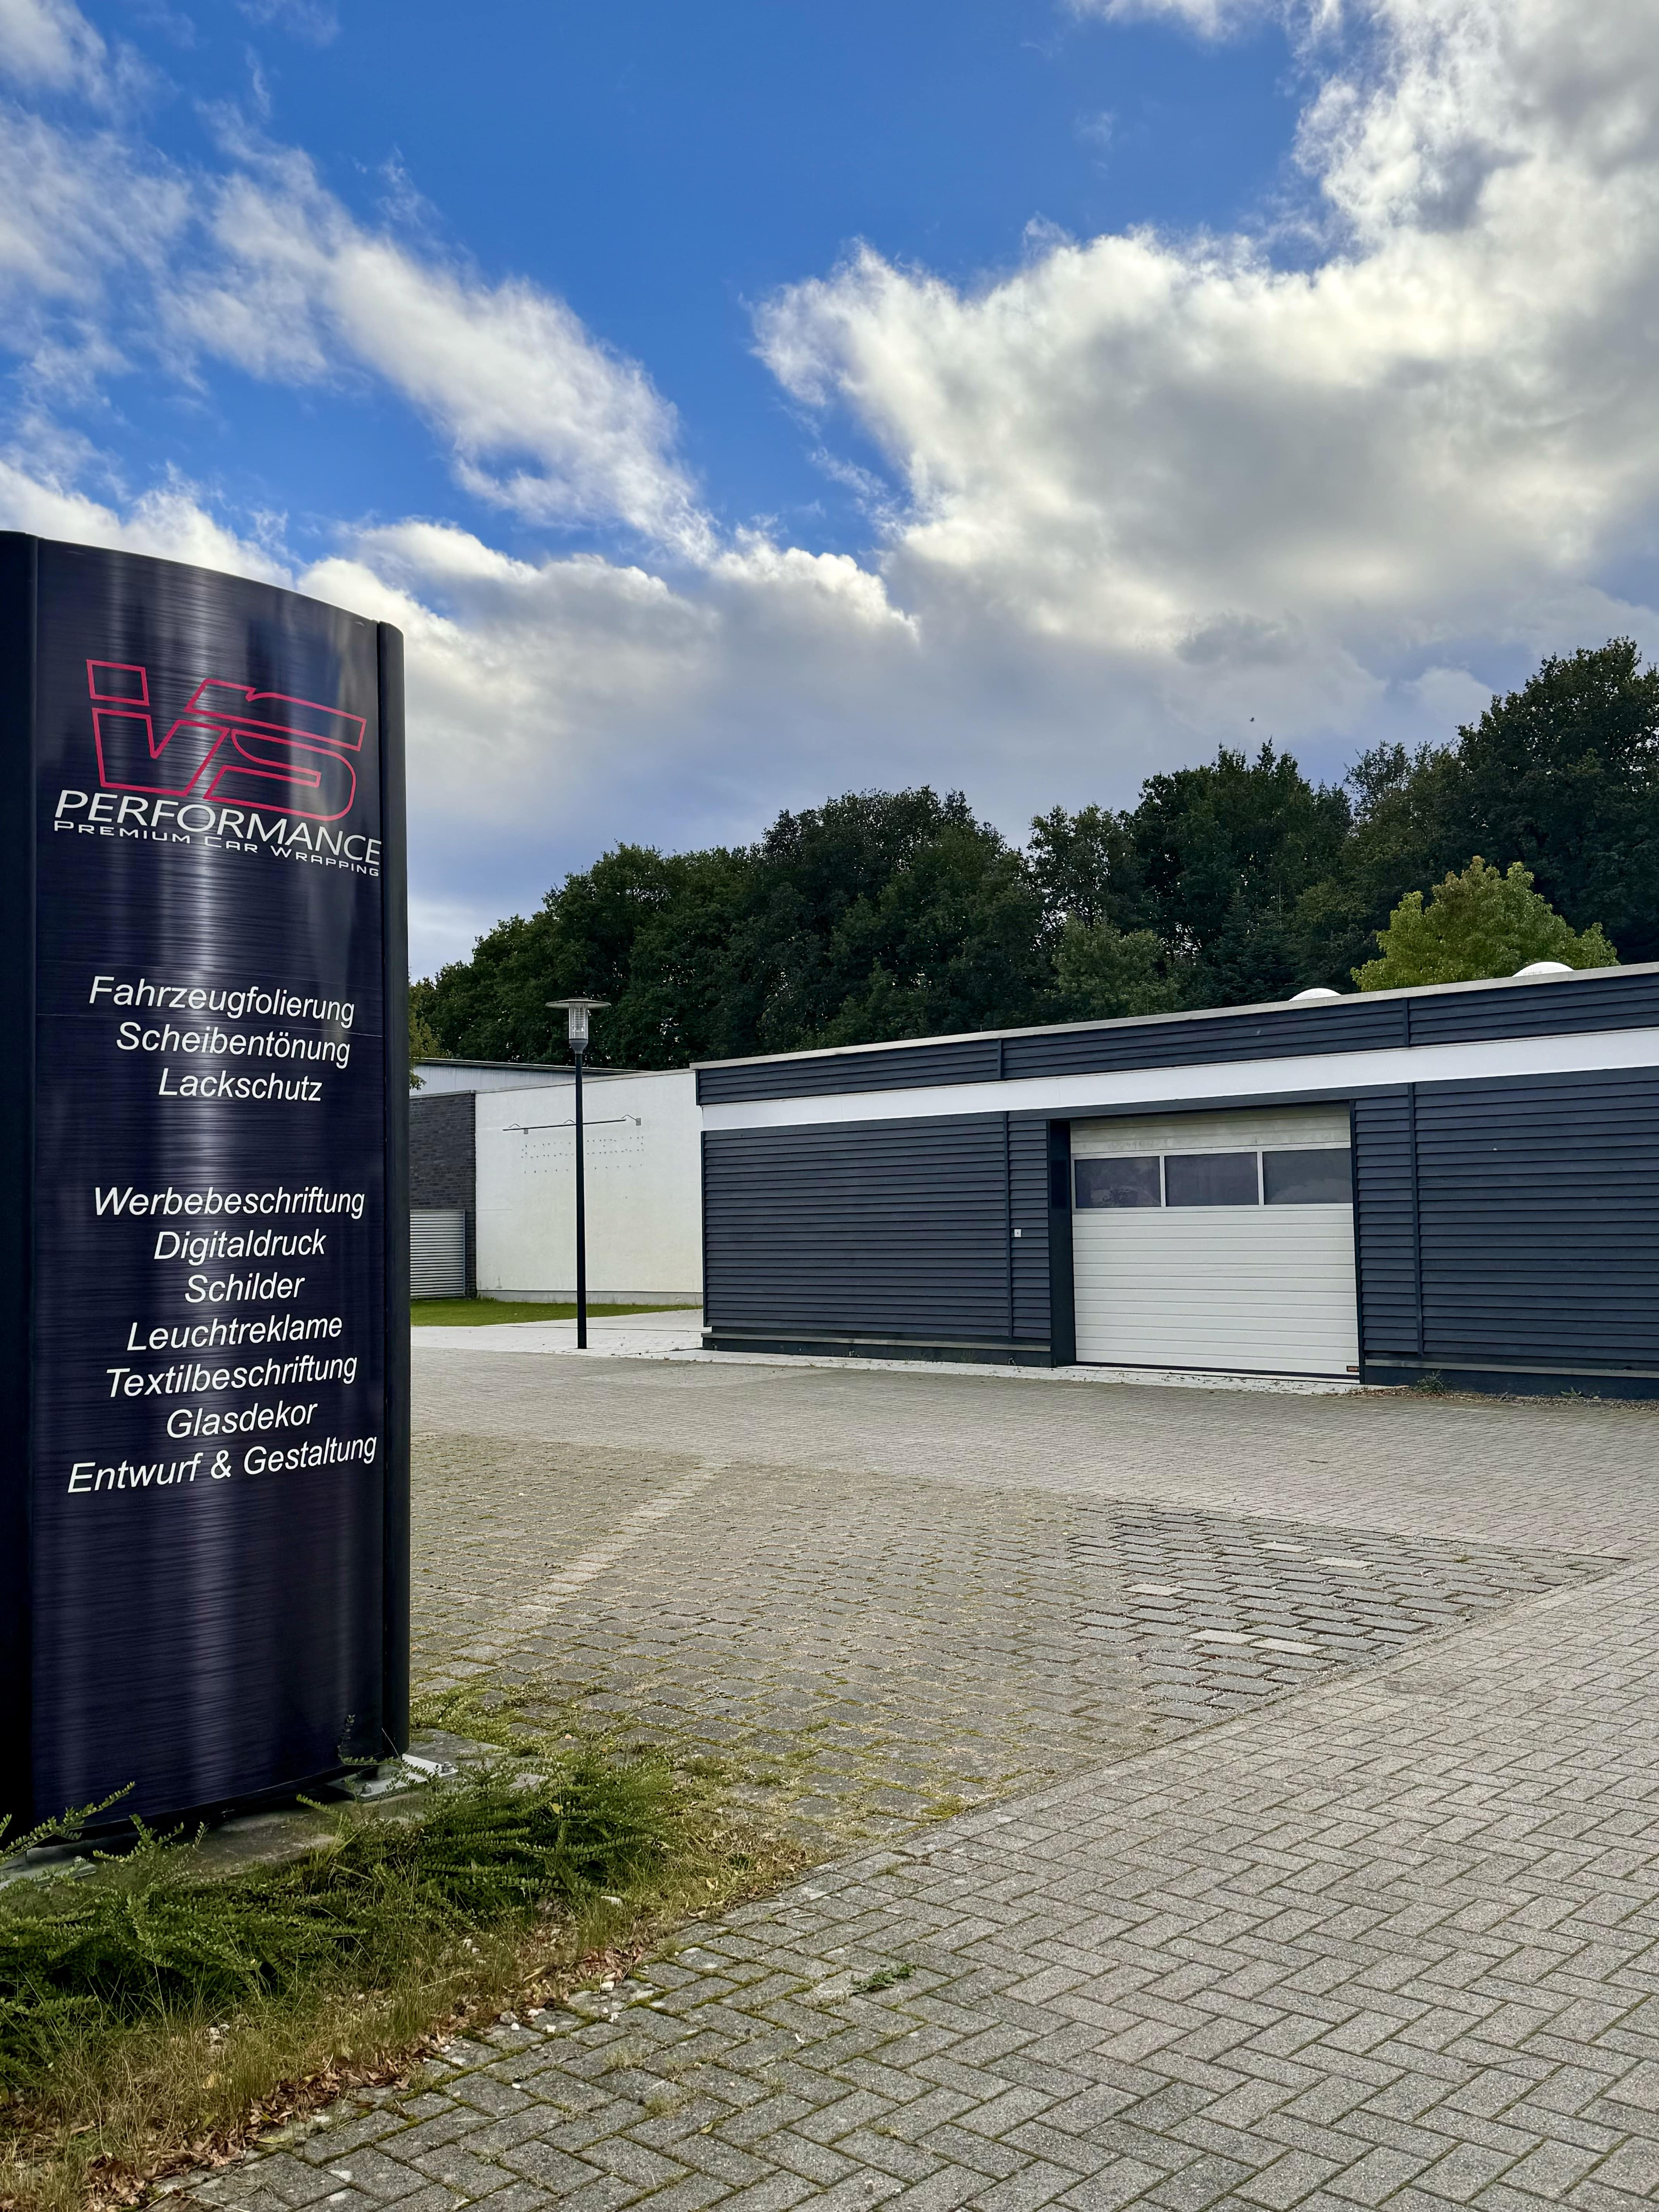 VS Performance Standort in Rheine, Halle